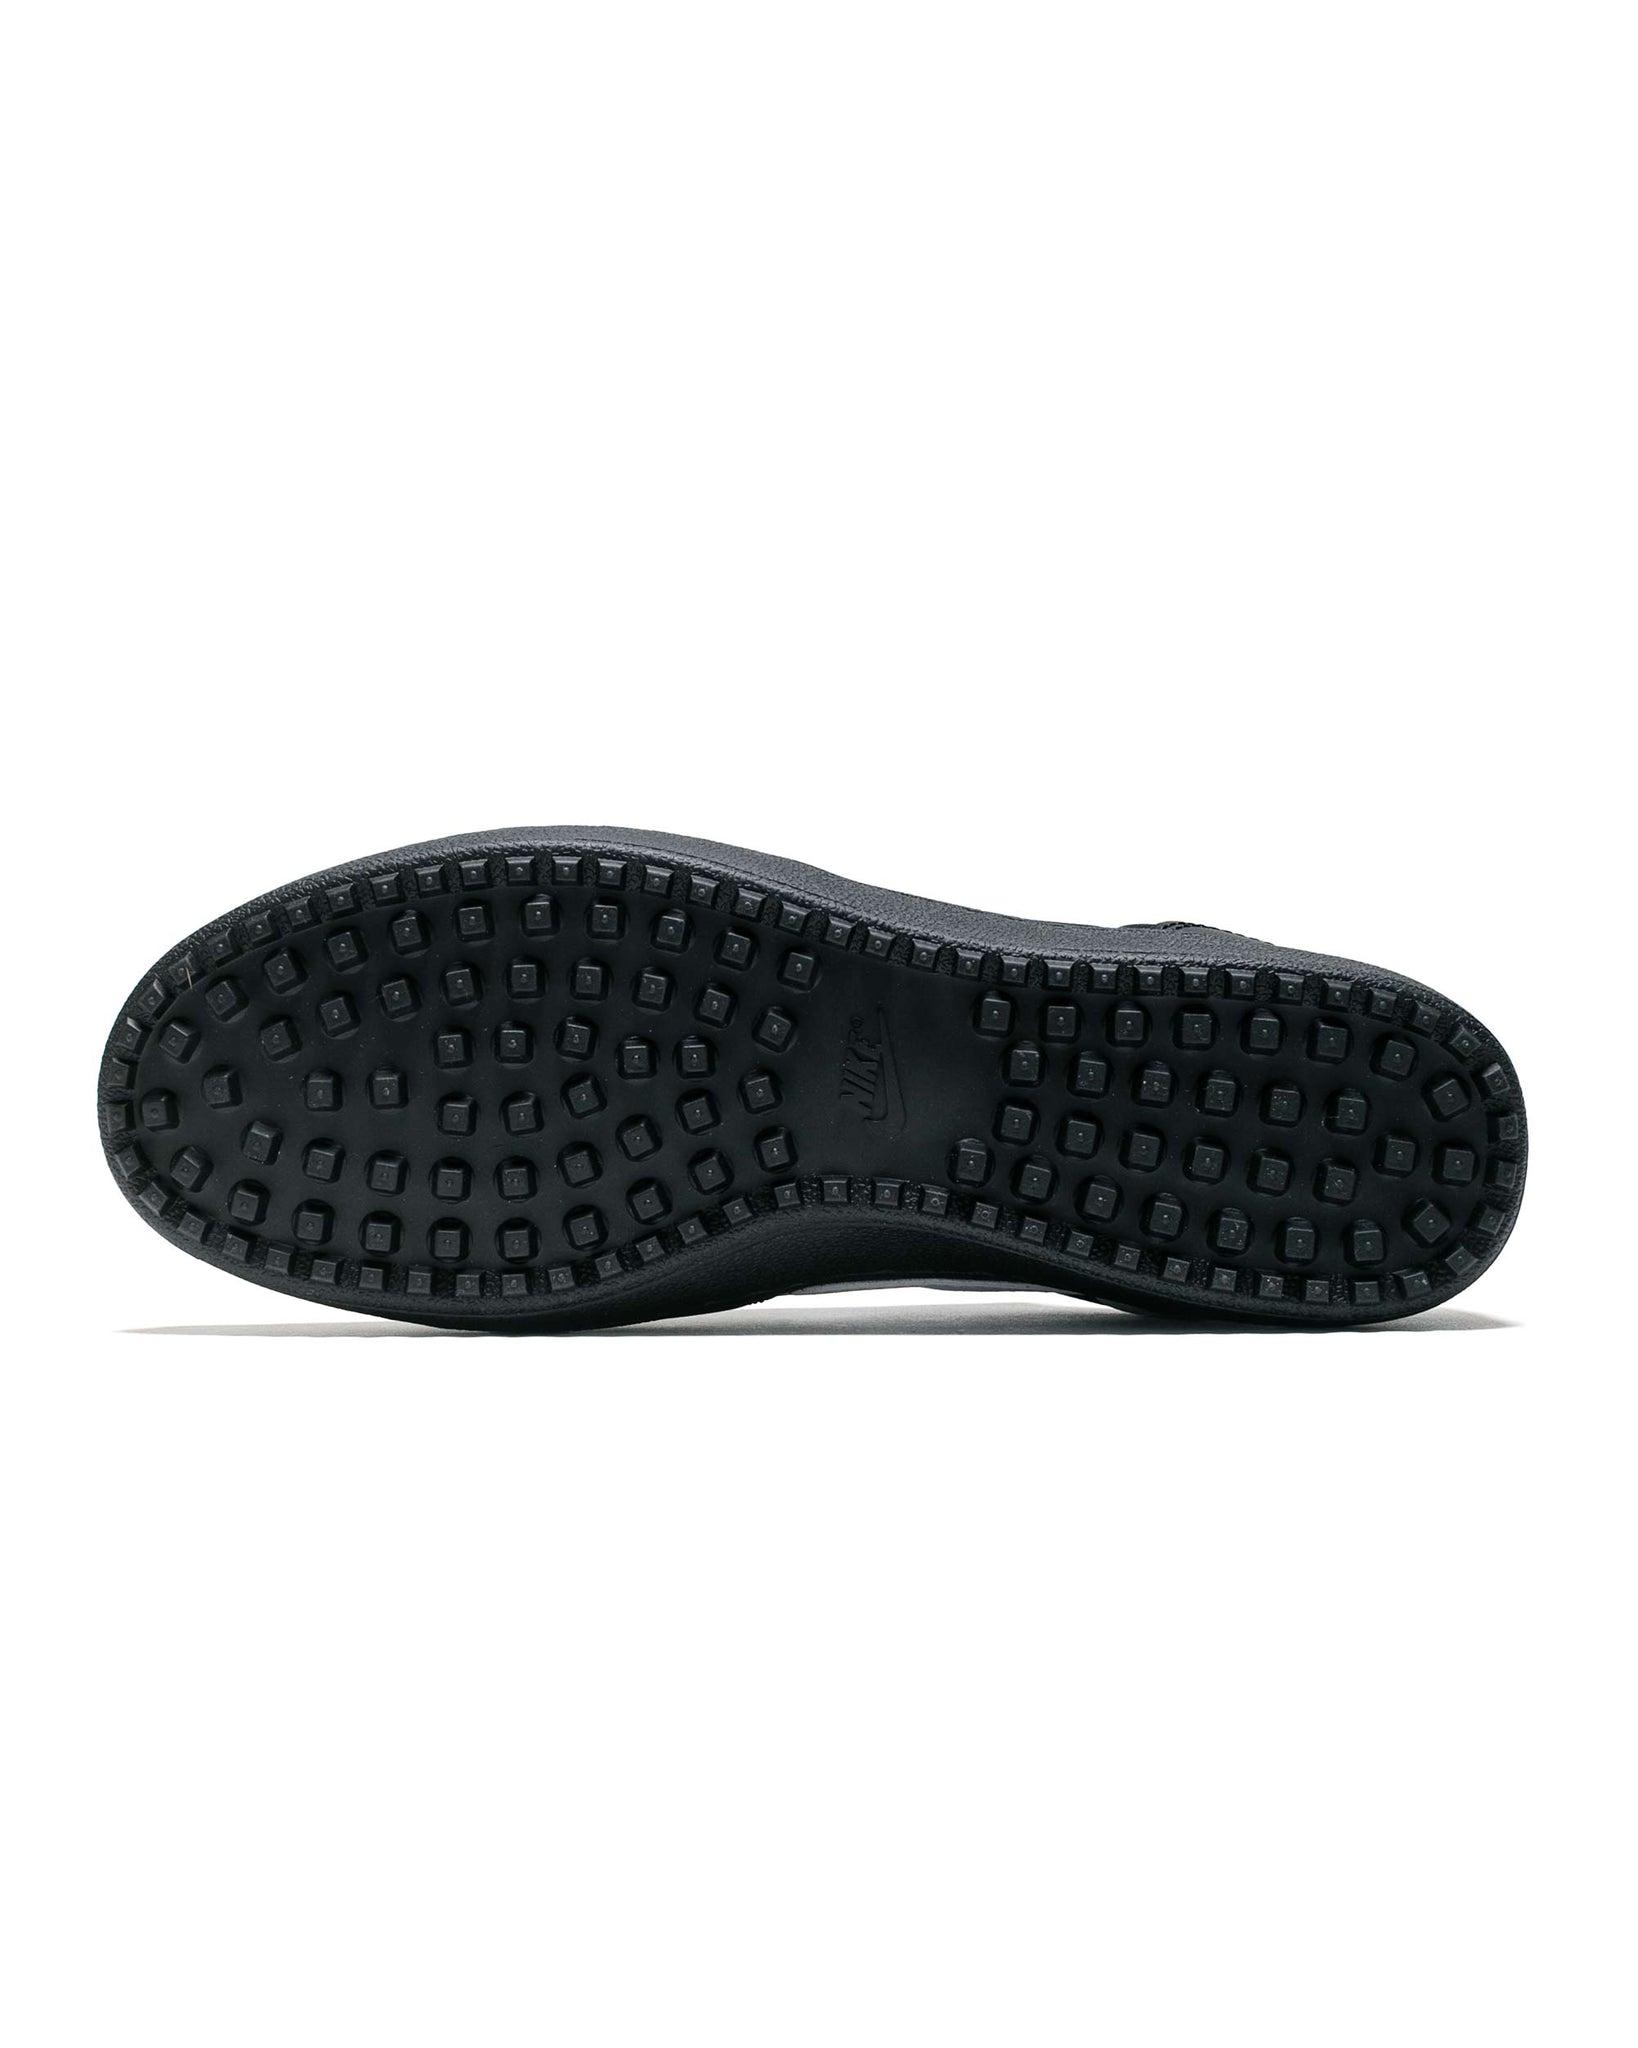 Nike Field General 82 SP Black/White sole